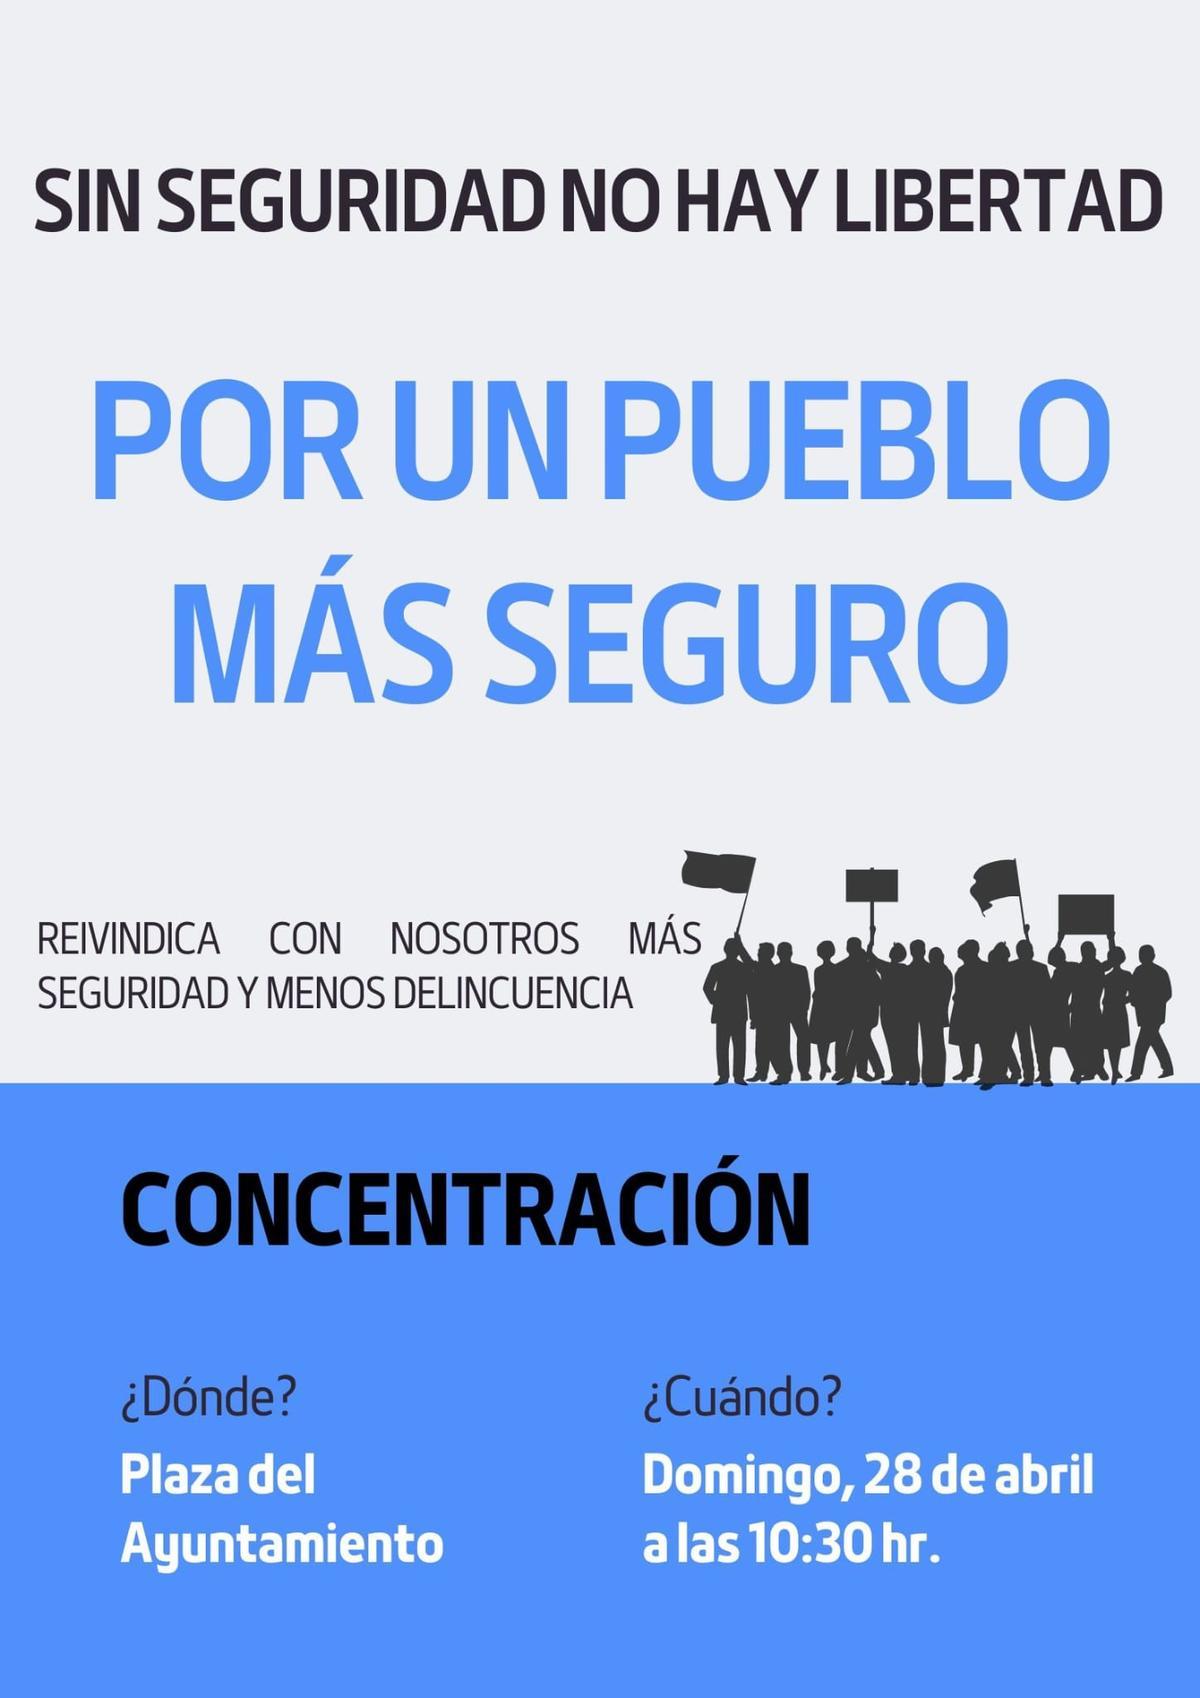 Cartel de la concentración solicitada por una concejala del Partido Popular en la Subdelegación del Gobierno